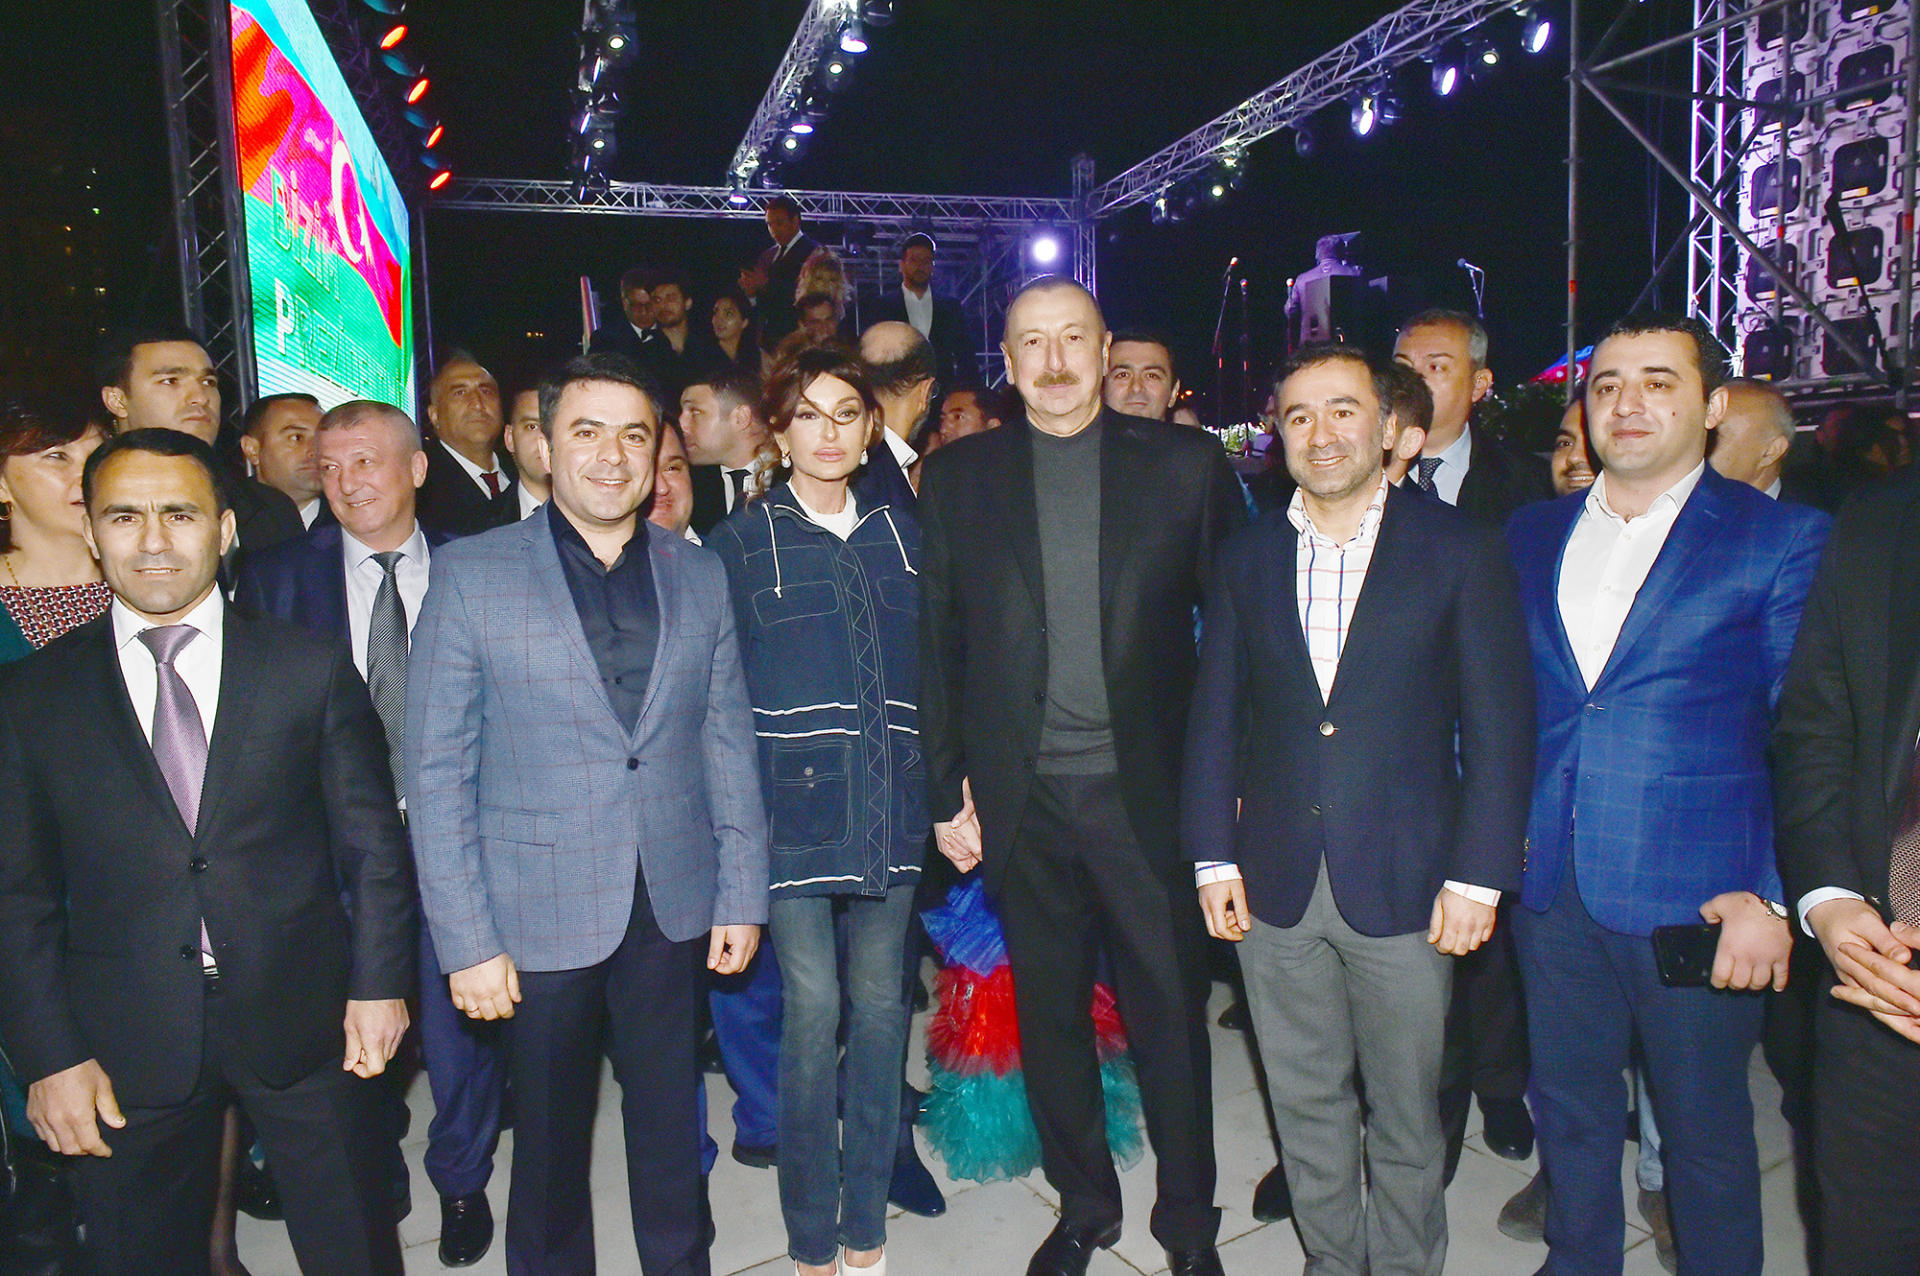 Президент Ильхам Алиев и его супруга Мехрибан Алиева приняли участие в концертной программе по случаю убедительной победы на президентских выборах (ФОТО)